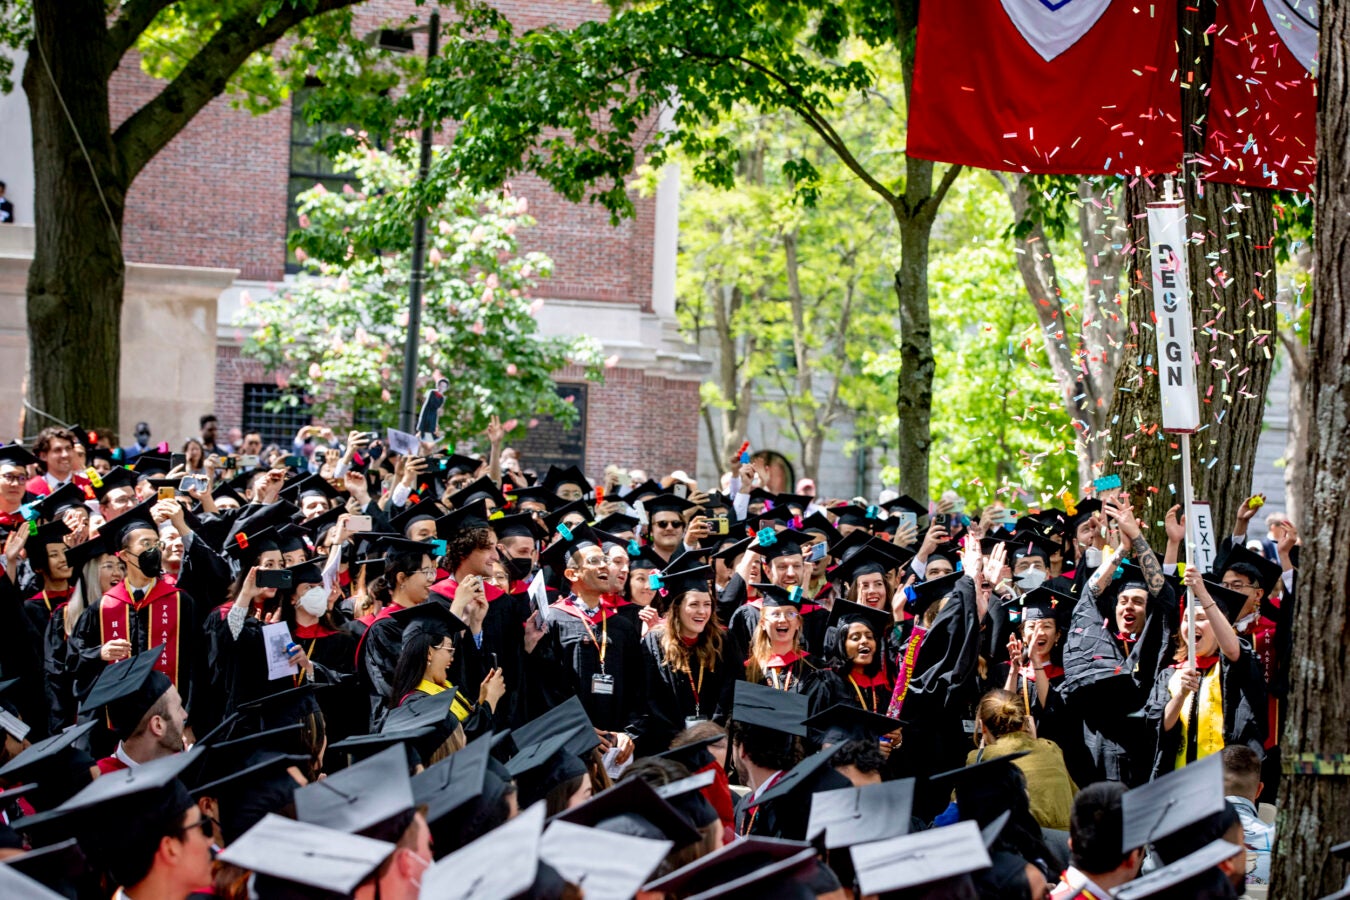 Harvard Graduate School of Design celebrates their conferral of degrees.